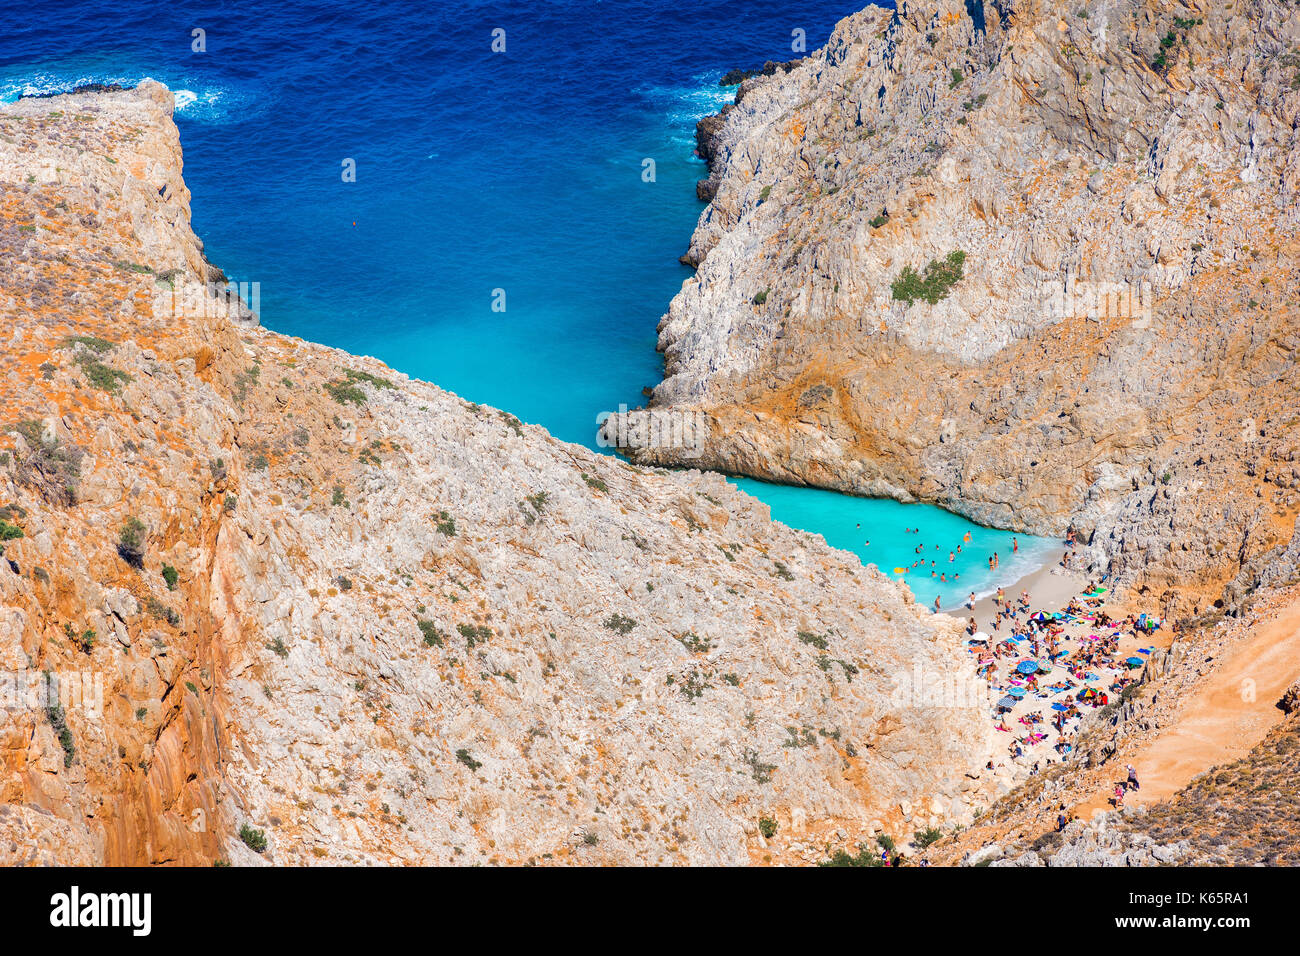 Seitan limania or Agiou Stefanou, the heavenly beach with turquoise water. Chania, Akrotiri, Crete, Greece. Stock Photo